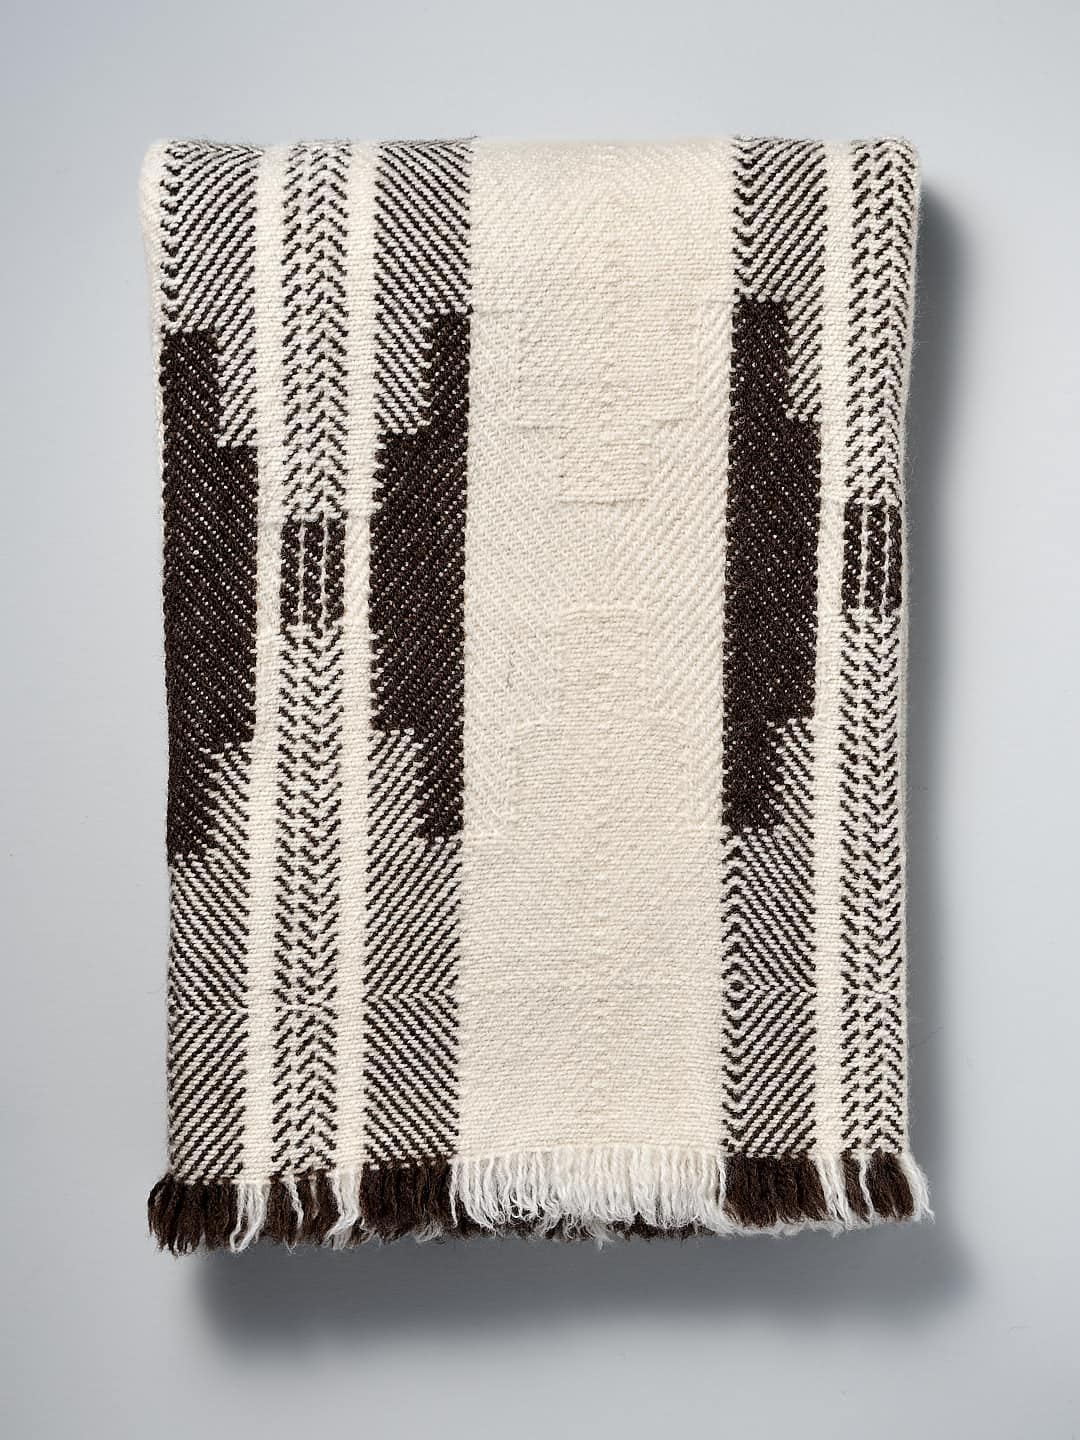 A Rodopska Takan Bulgarian Wool Blanket on a white background.